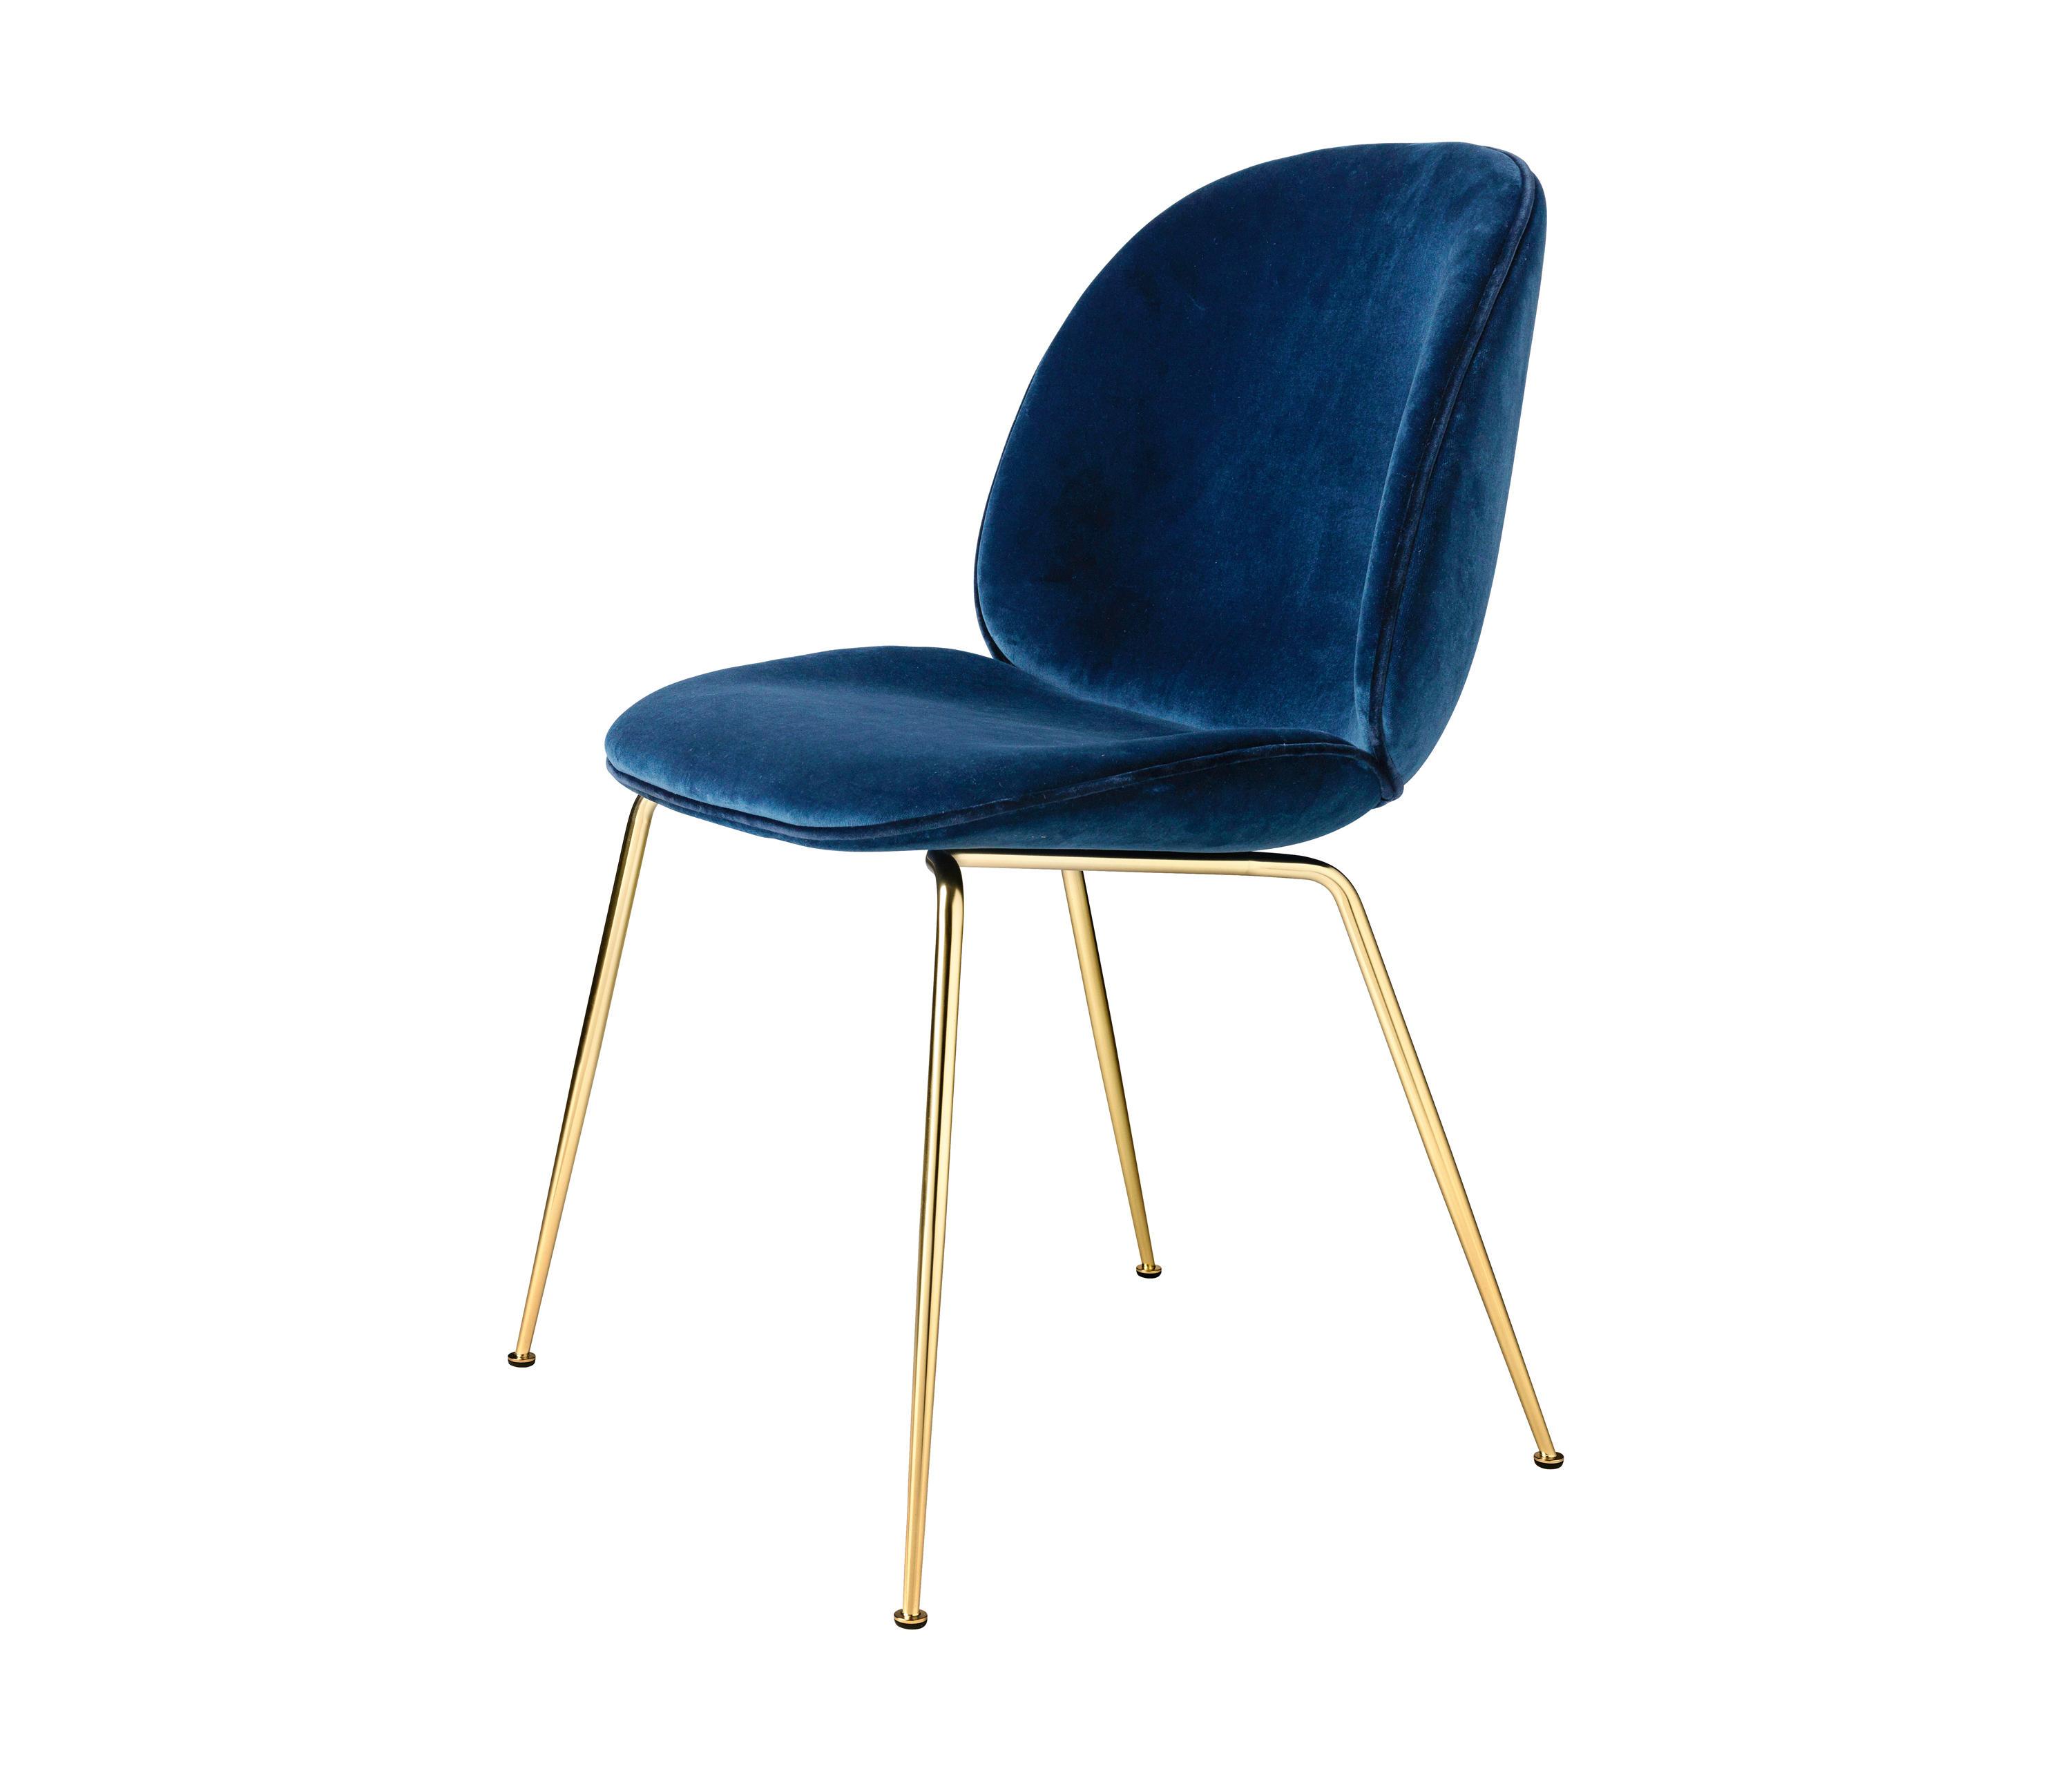 Купить стулья с доставкой. Стул gubi Beetle. Gubi Beetle Dining Chair. Стулья Beetle Dining Chair - fully Upholstered - Conic Base. Стул Битл Velvet Blue.